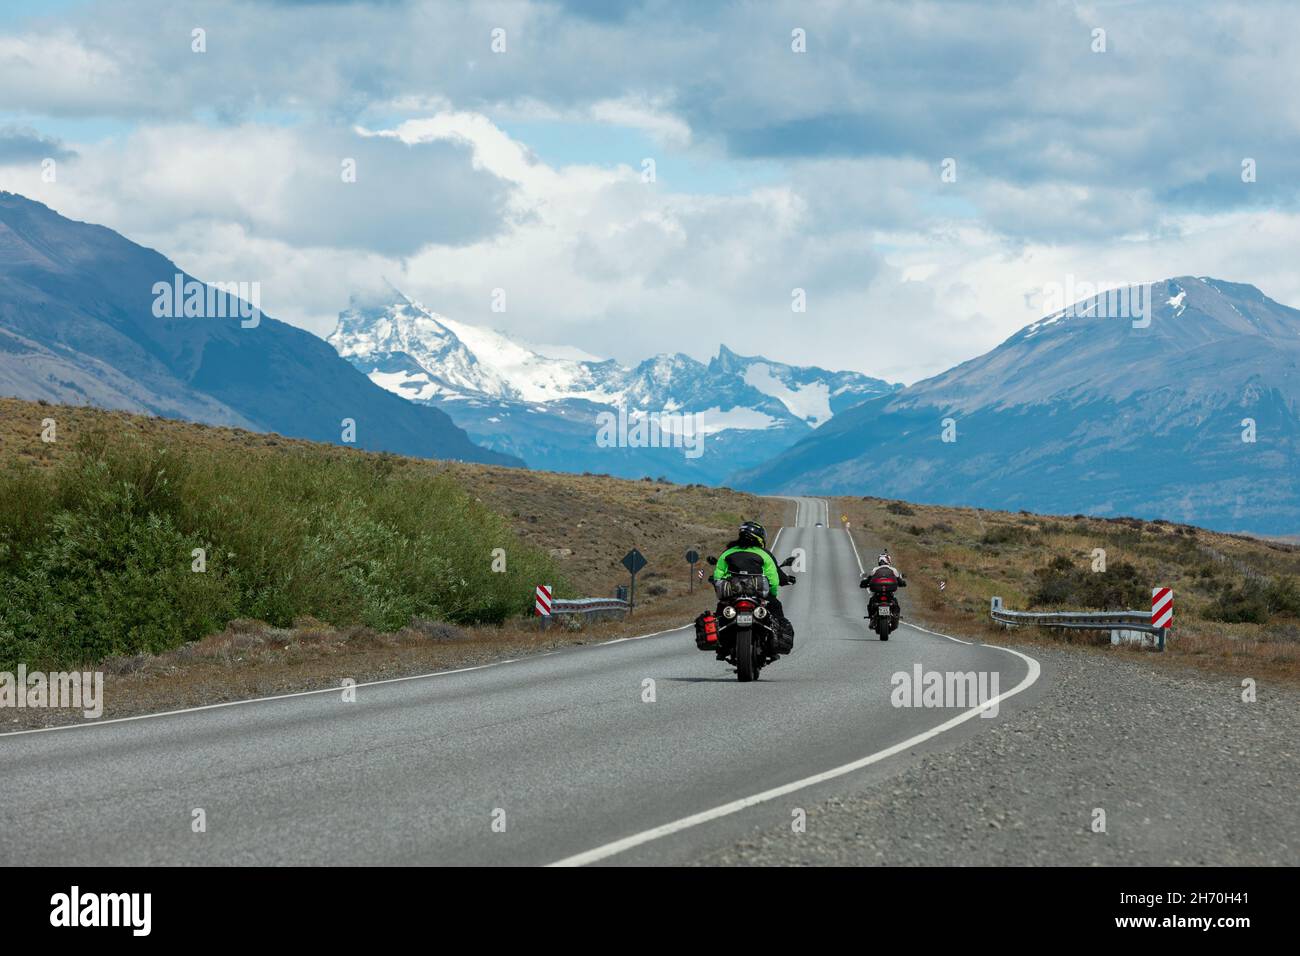 EL CALAFATE, ARGENTINIEN - 26. JANUAR 2019: Zwei Motorräder fahren in El Calafate auf einer Straße in Richtung Berge Stockfoto